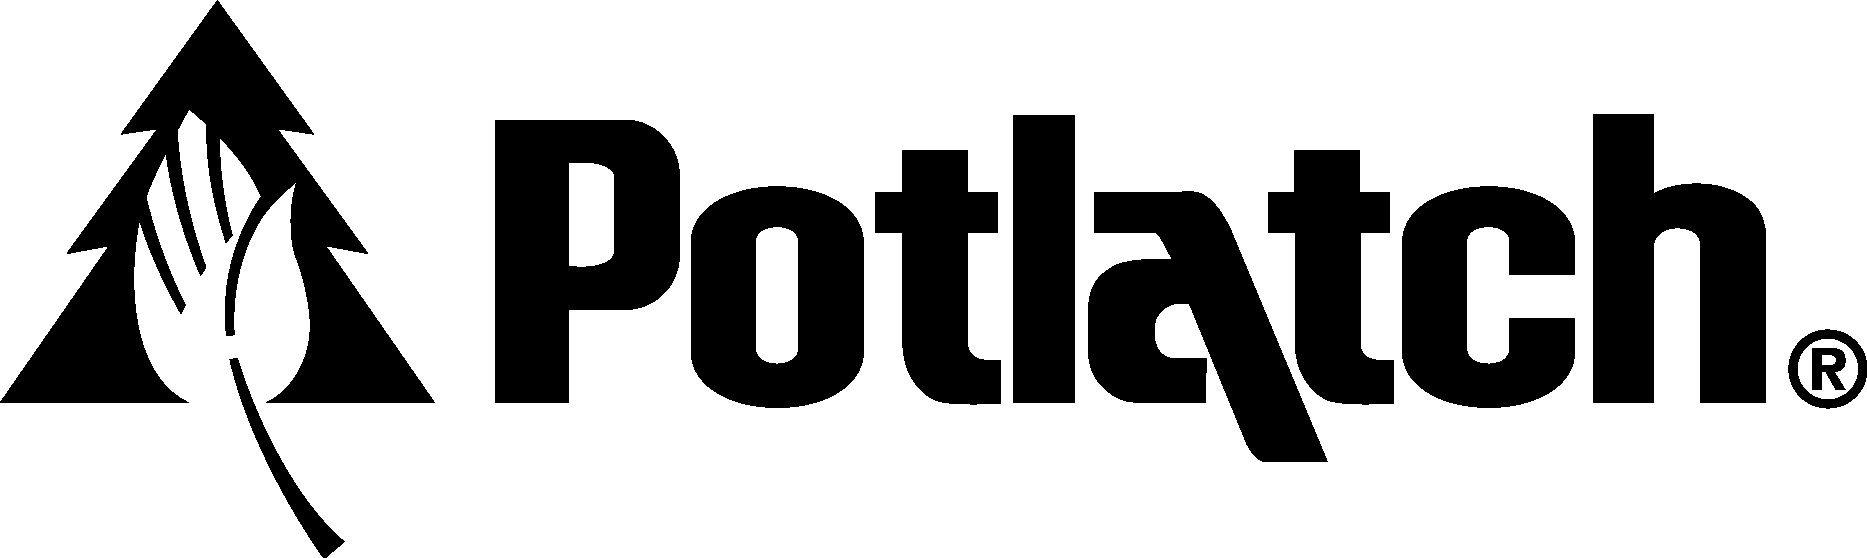 Potlatch Black Logo Vector